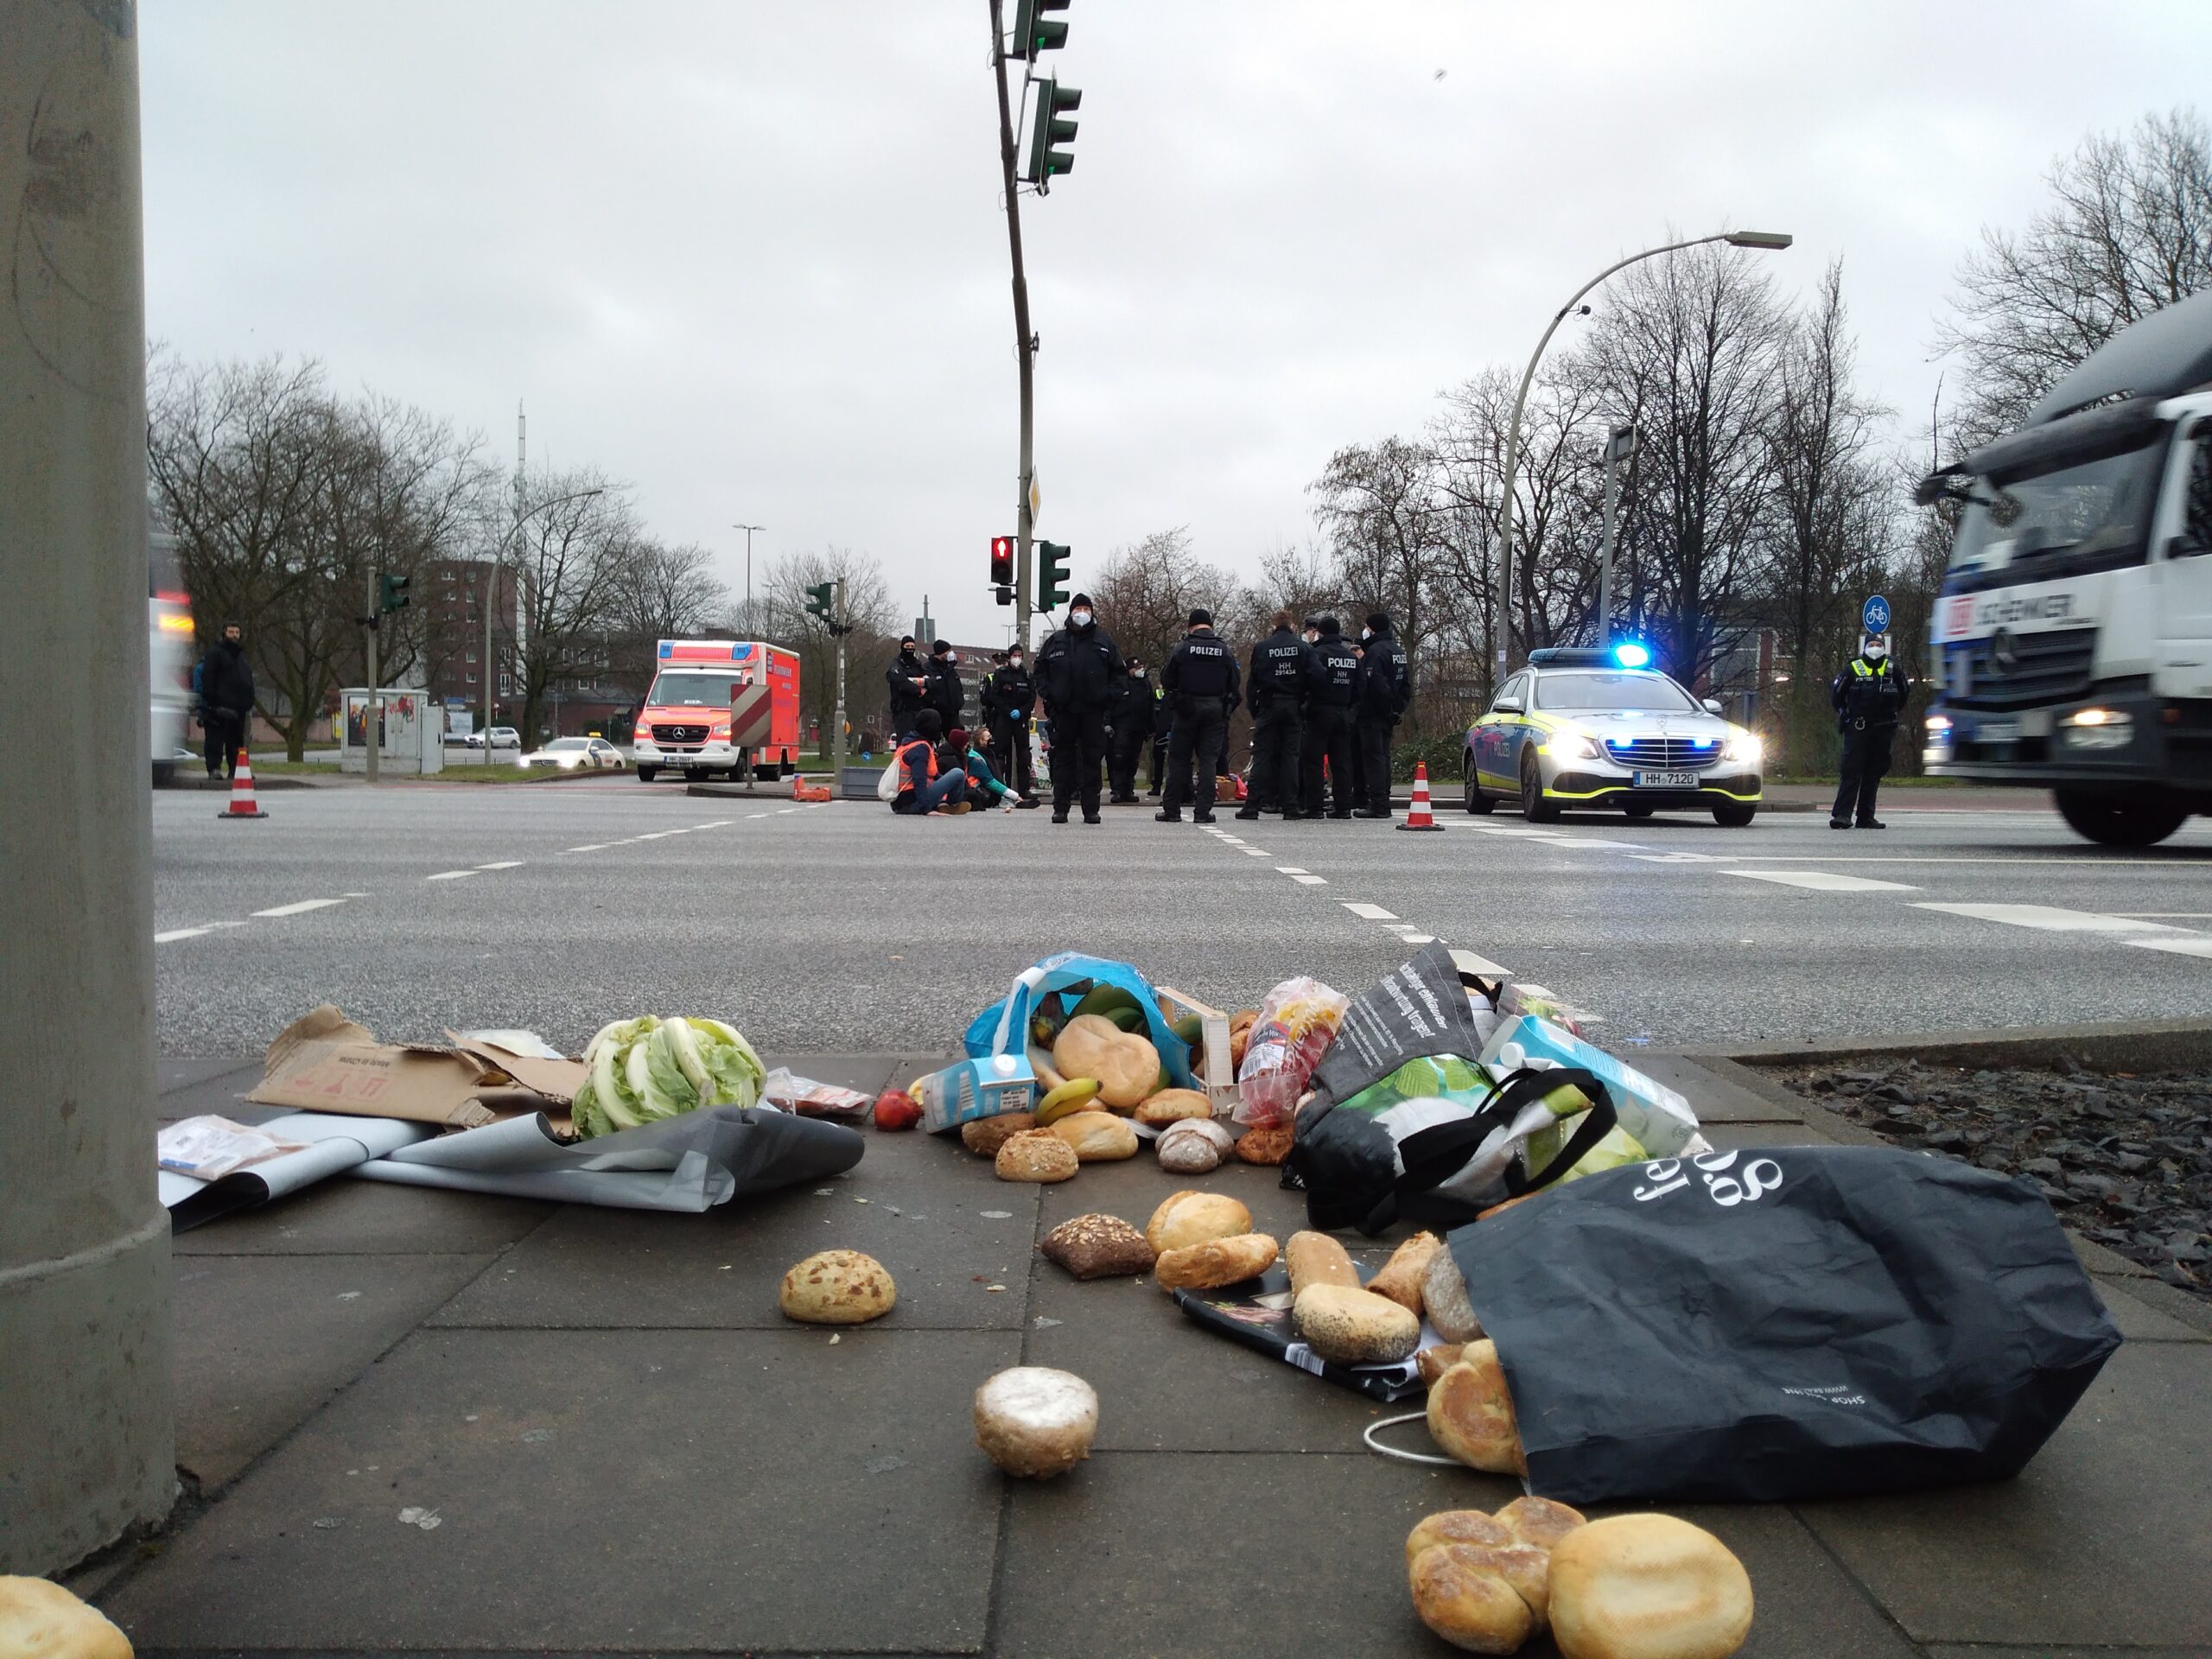 Brötchen liegen auf dem Bürgersteig verstreut, Polizisten stehen um eine Gruppe Aktivisten